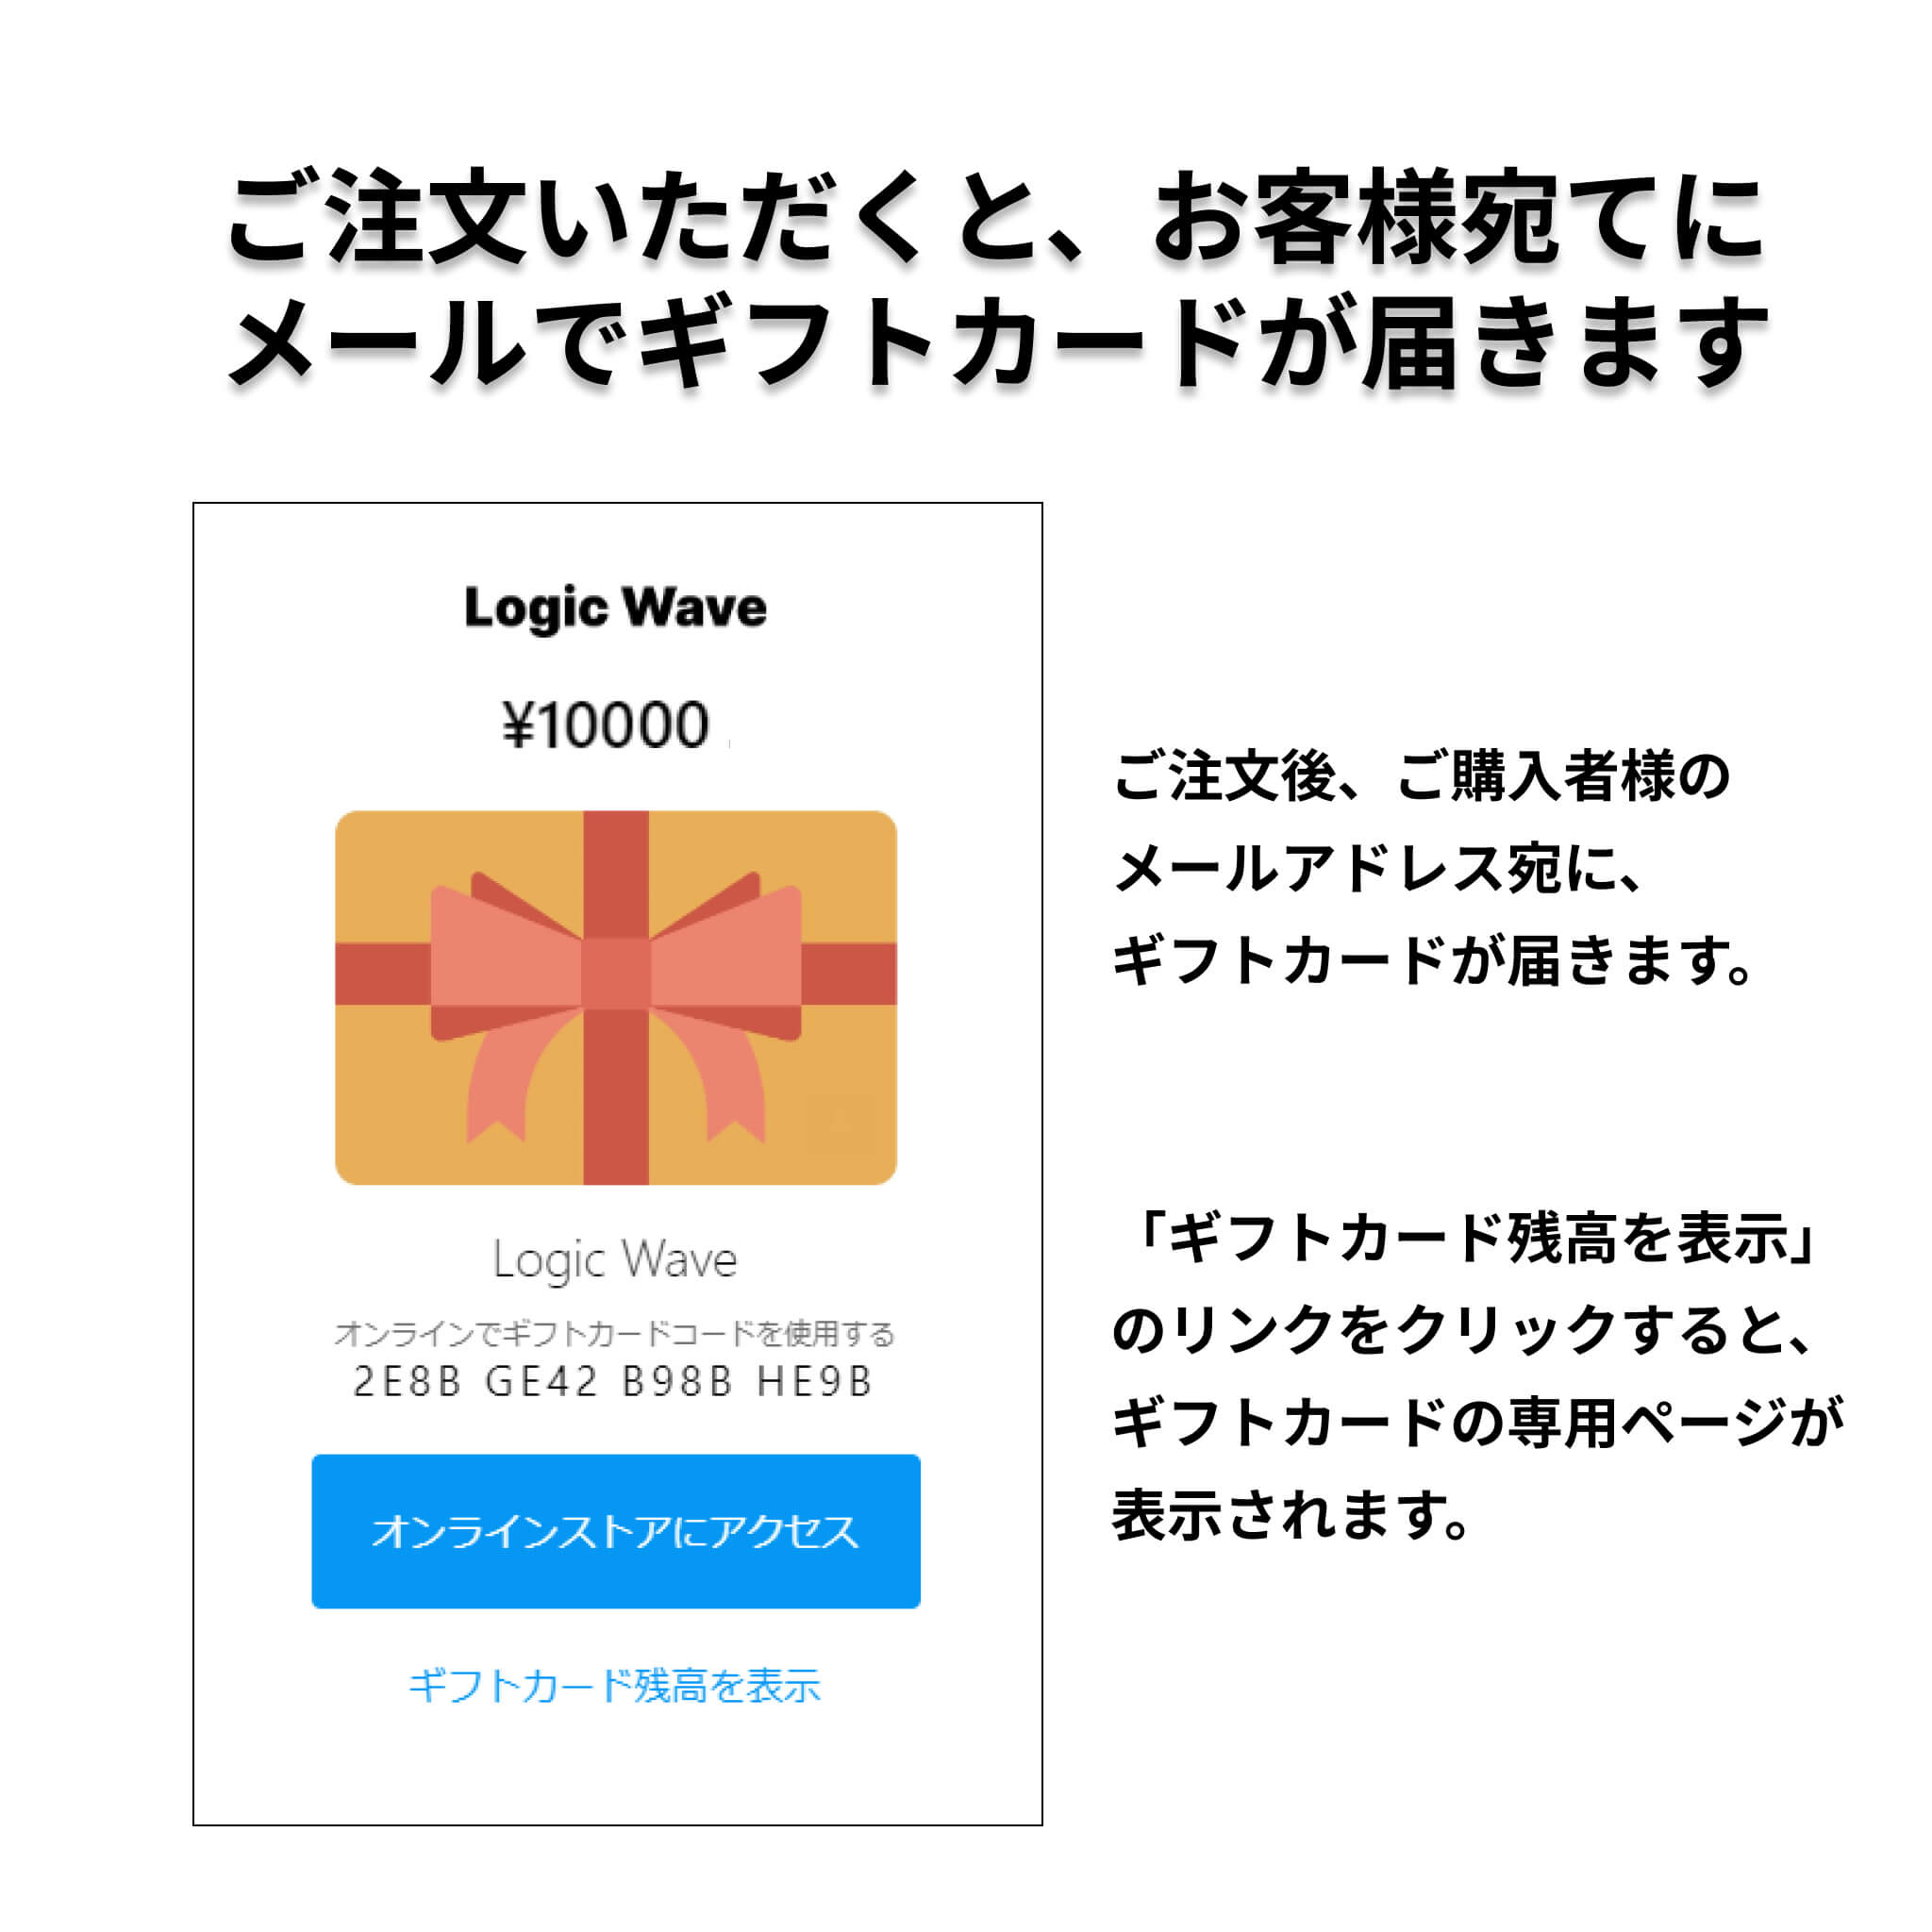 Logic Wave Gift Card